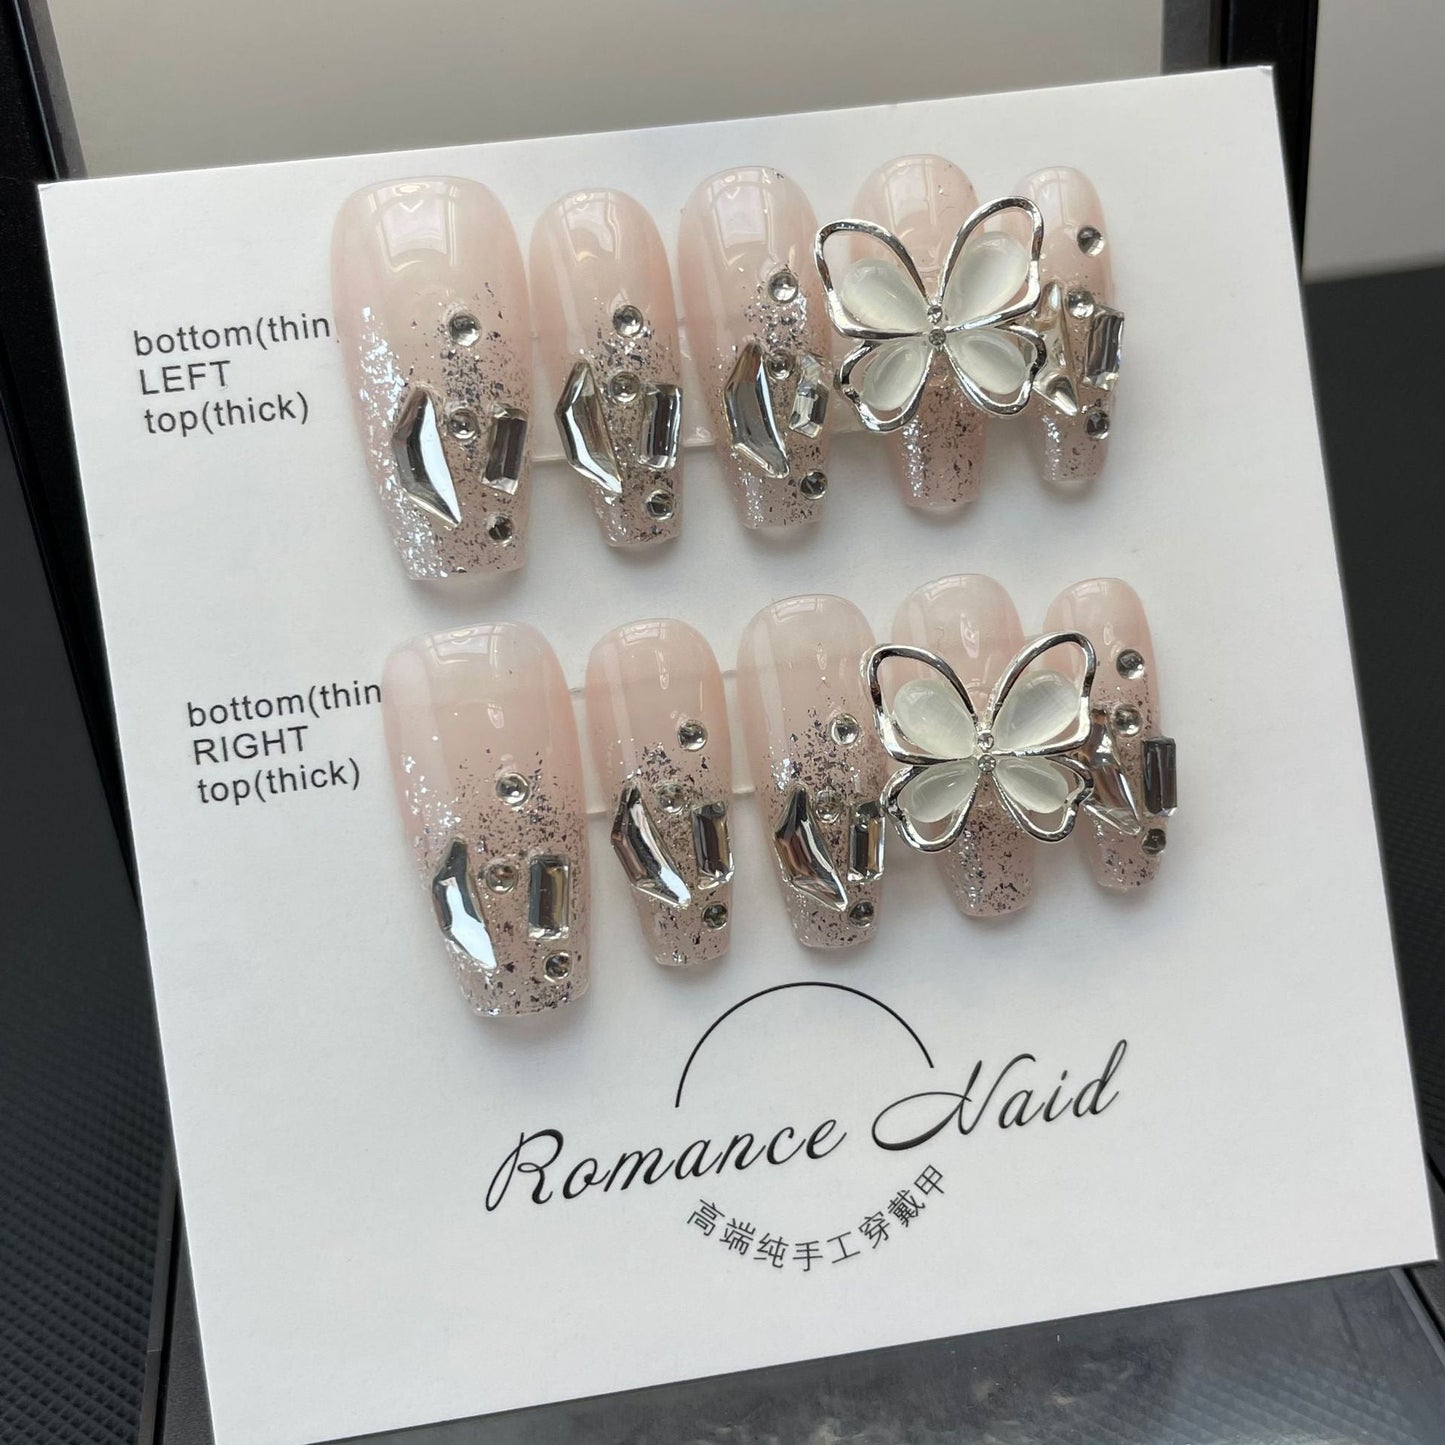 694/695 Presse style papillon sur les ongles 100% faux ongles faits à la main couleur nude rose